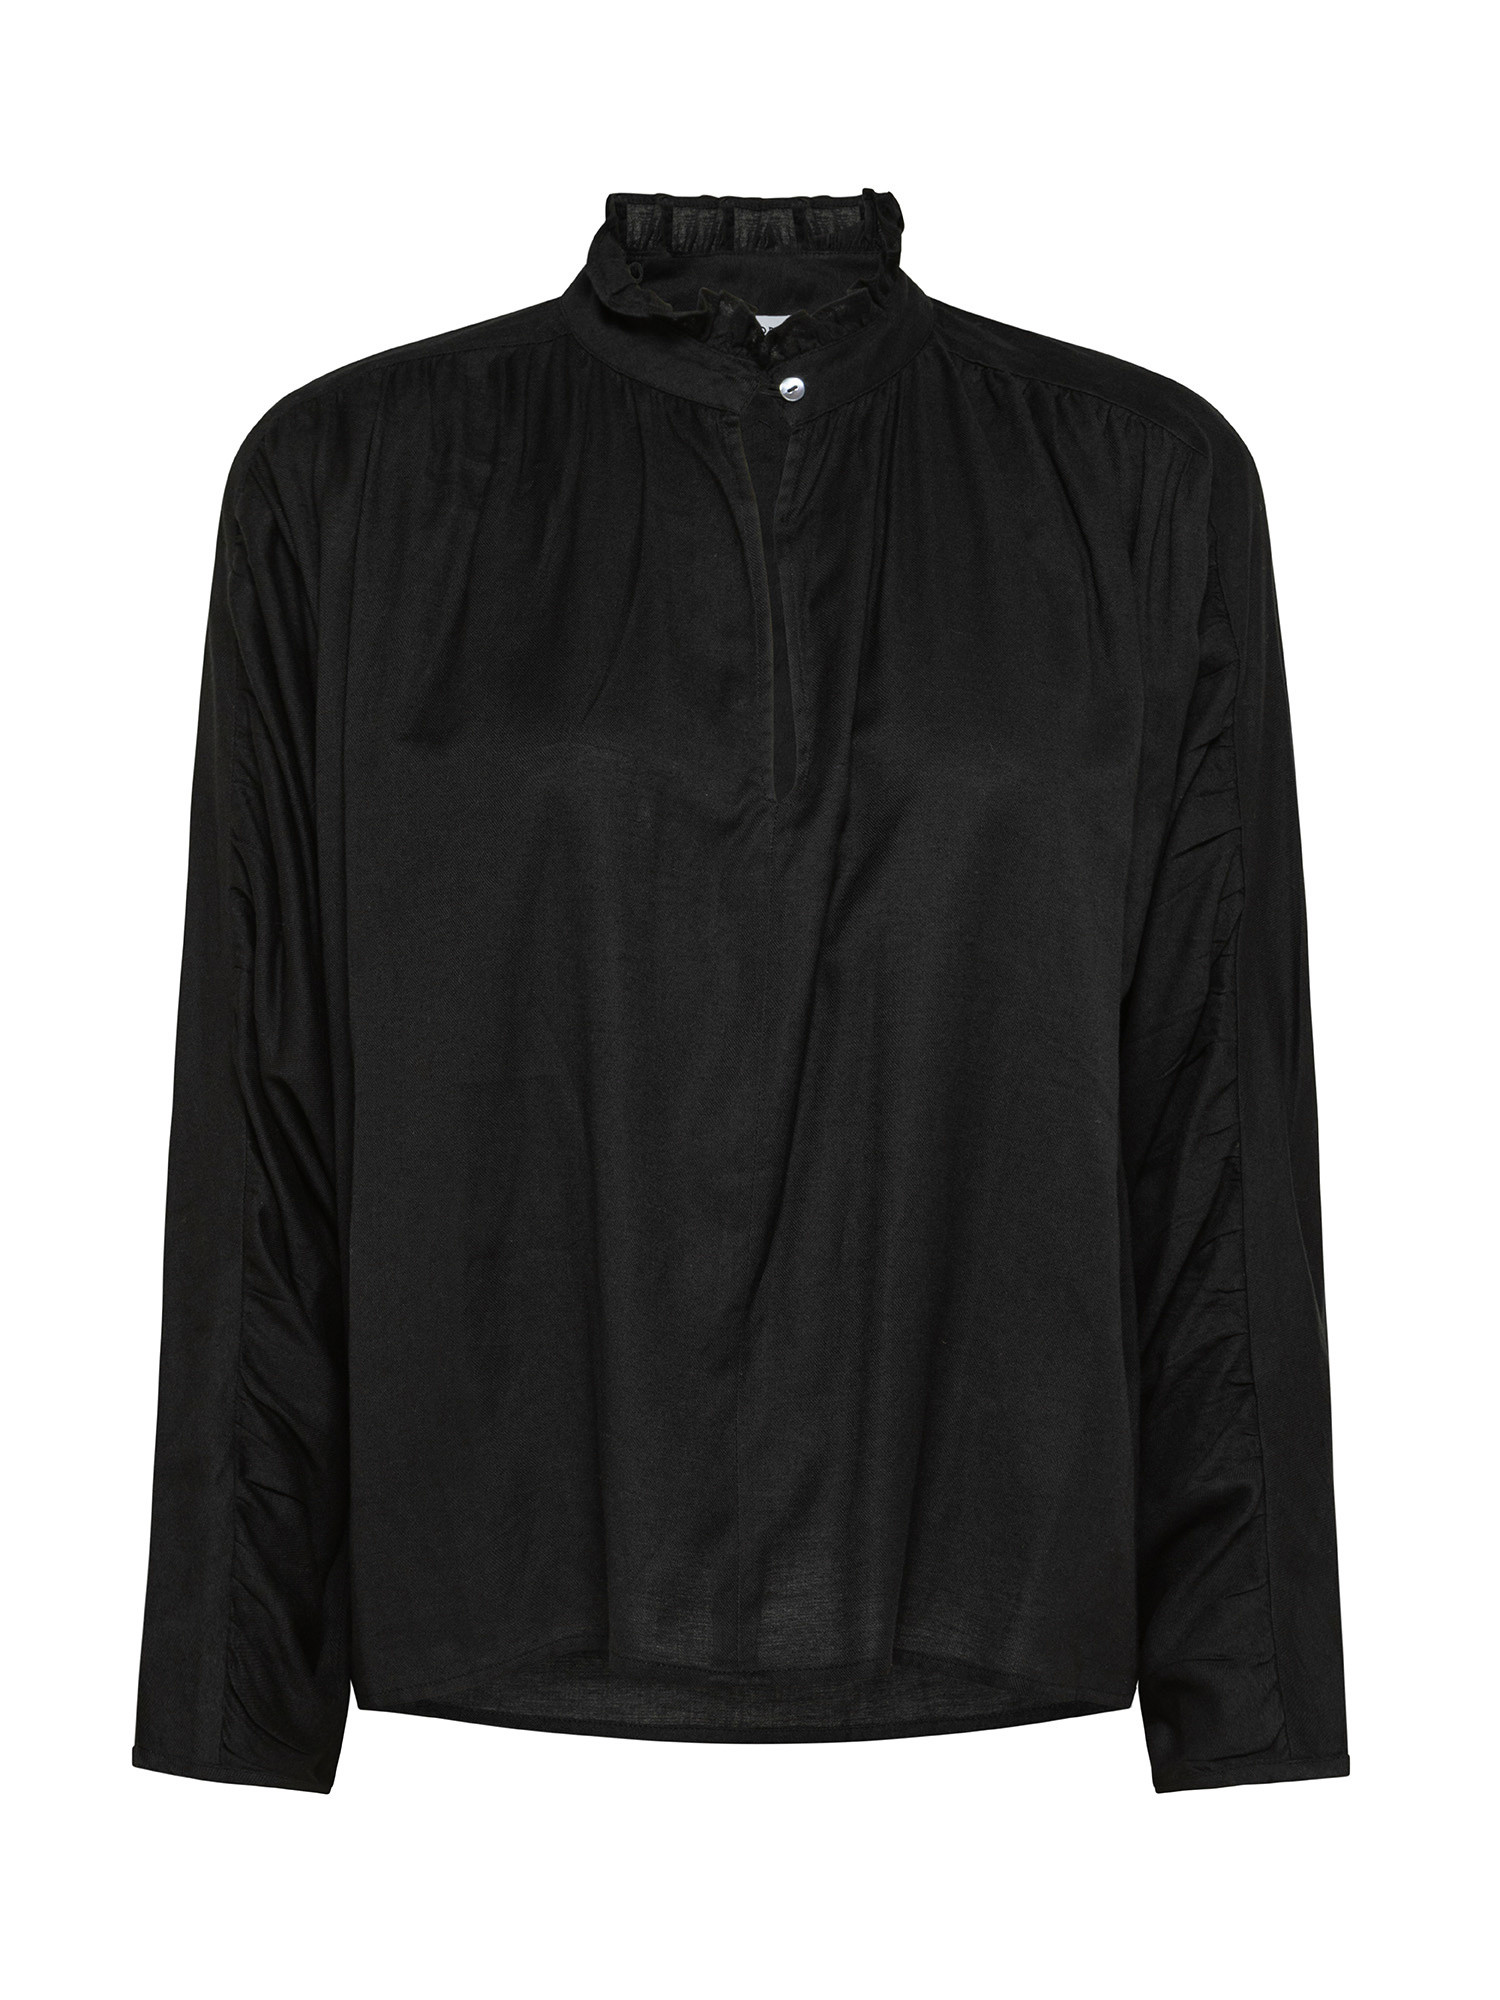 Blusa in cotone con maniche lunghe, Nero, large image number 0